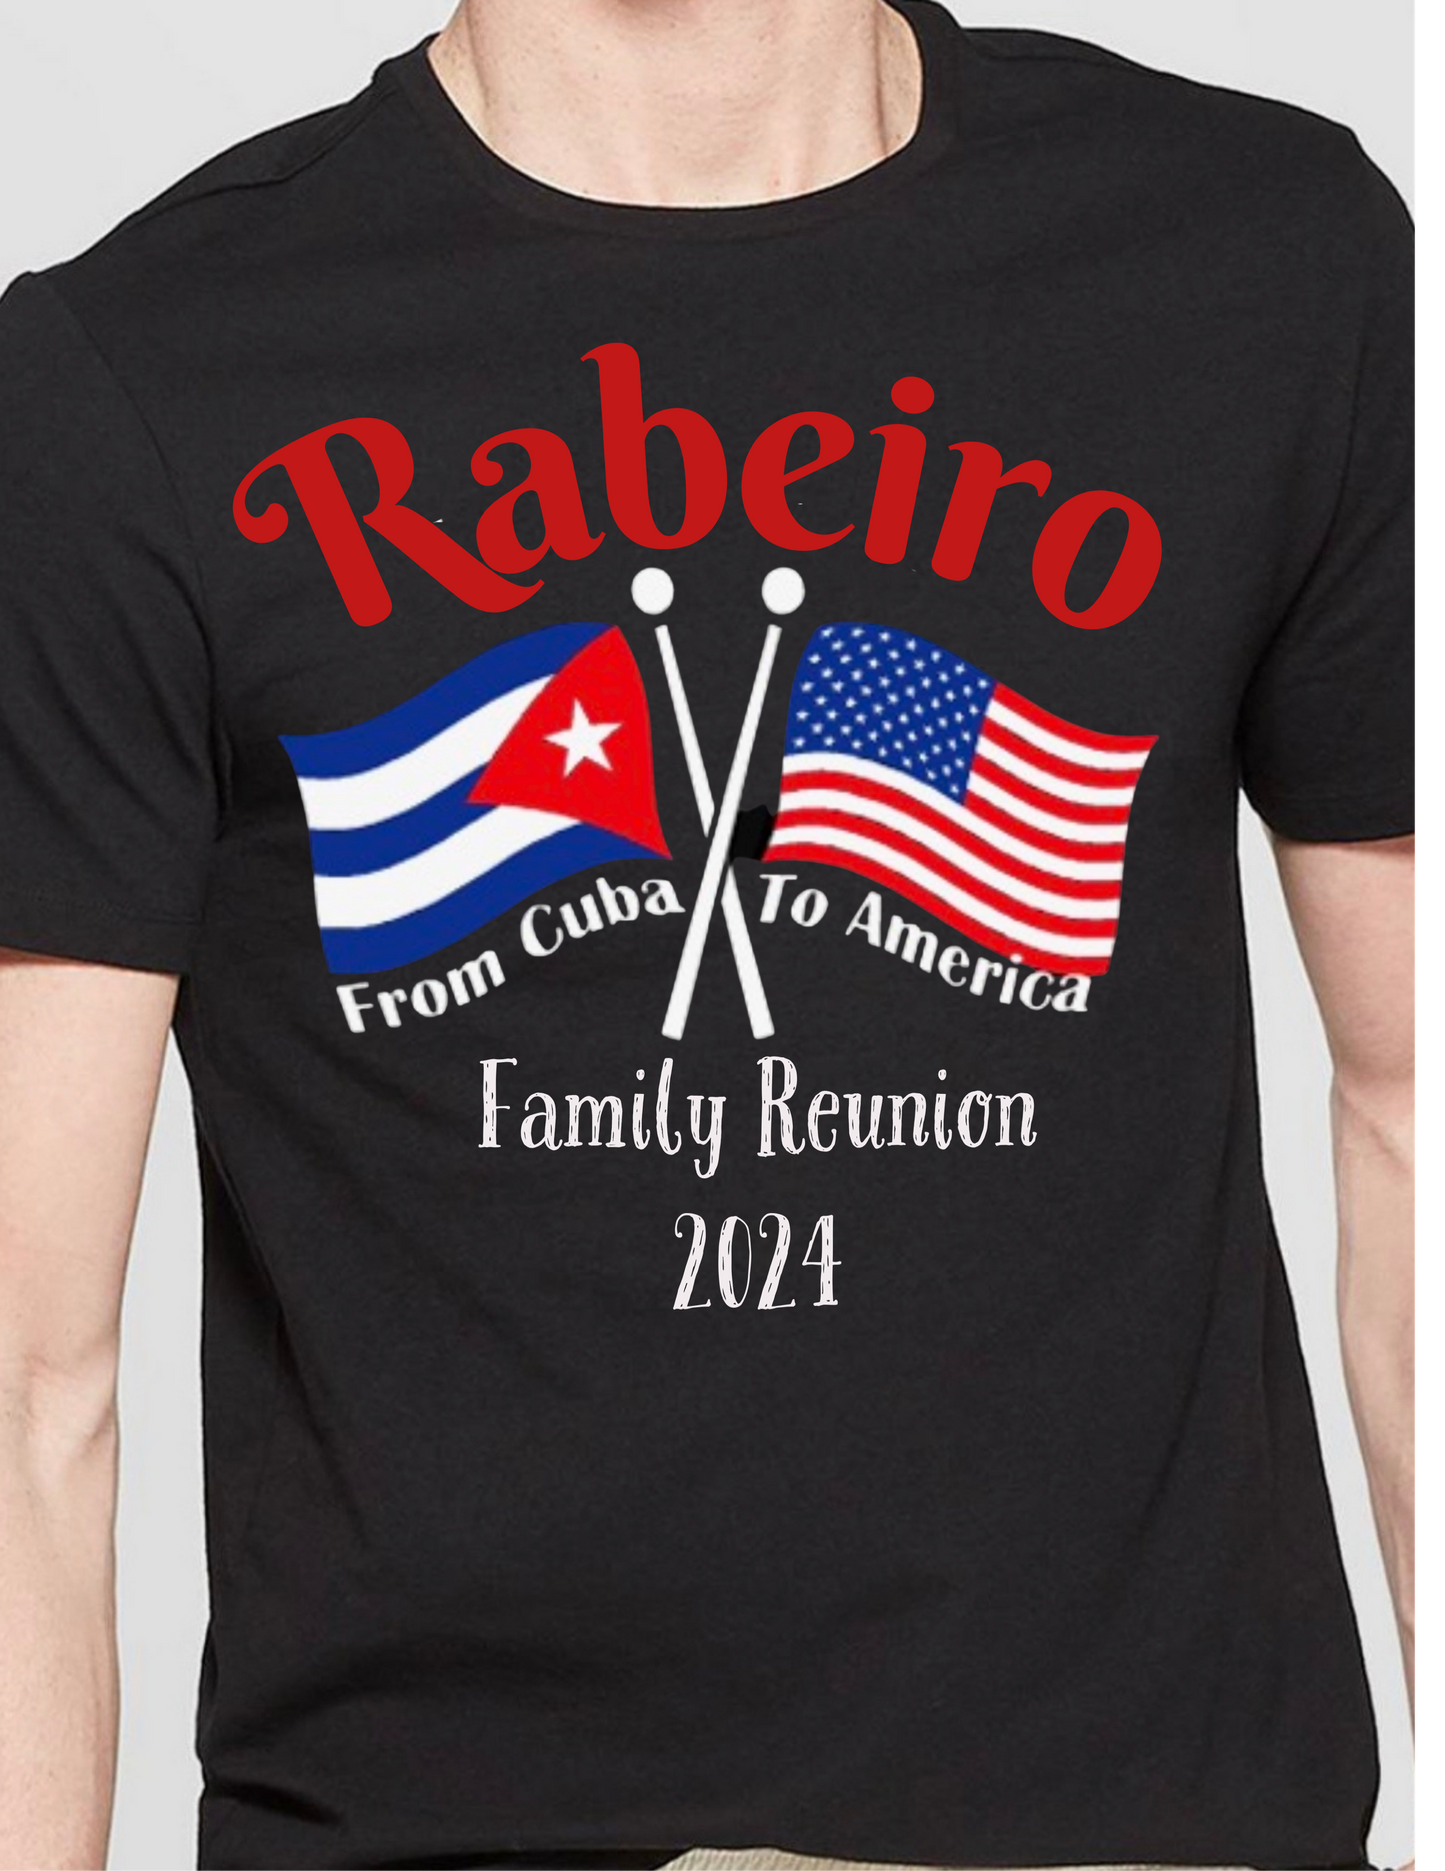 RABEIRO FAMILY REUNION